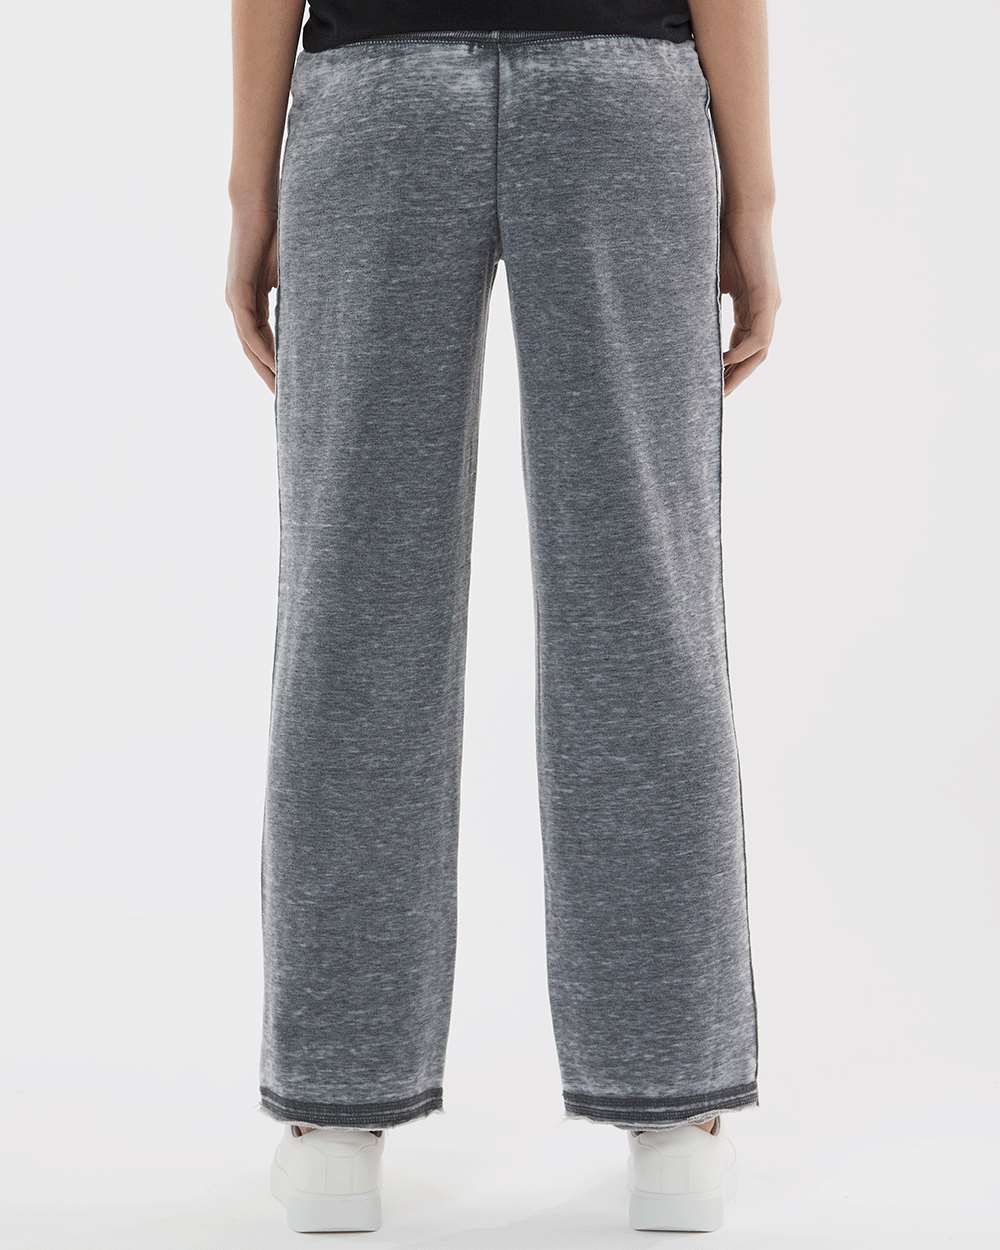 J. America Women’s Vintage Zen Fleece Sweatpants - image 3 of 5